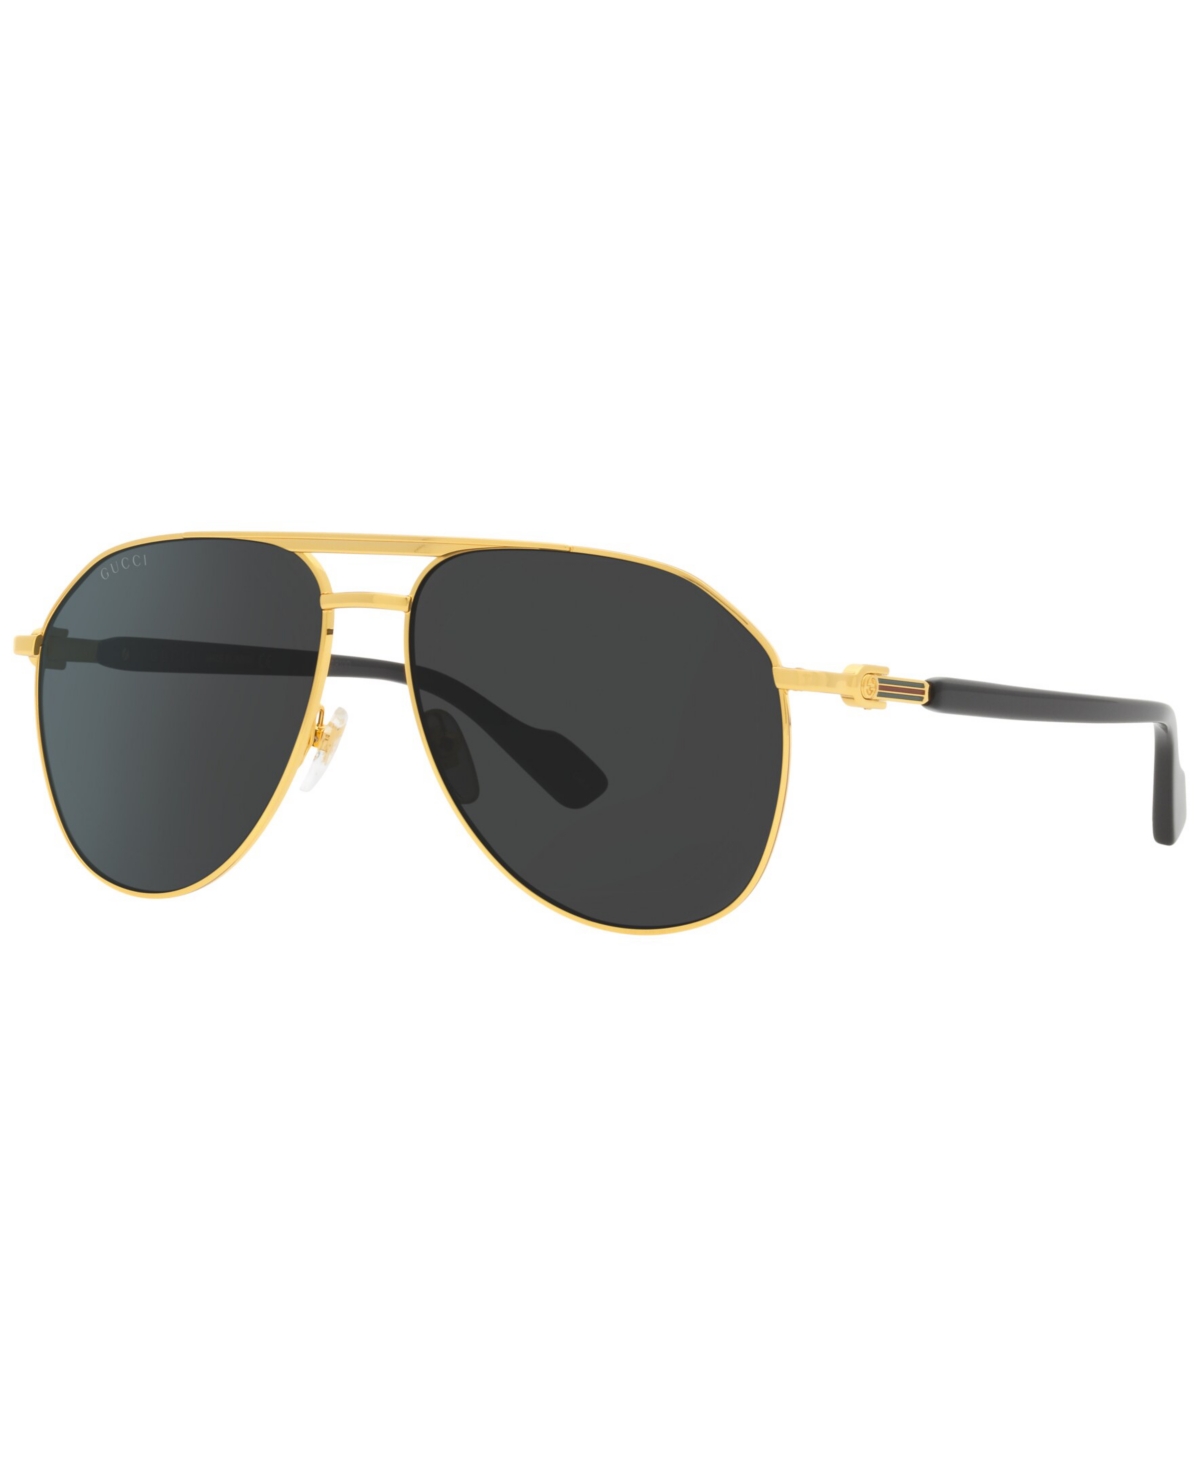 Gucci Men's Sunglasses, Gc001938 In Gold-tone